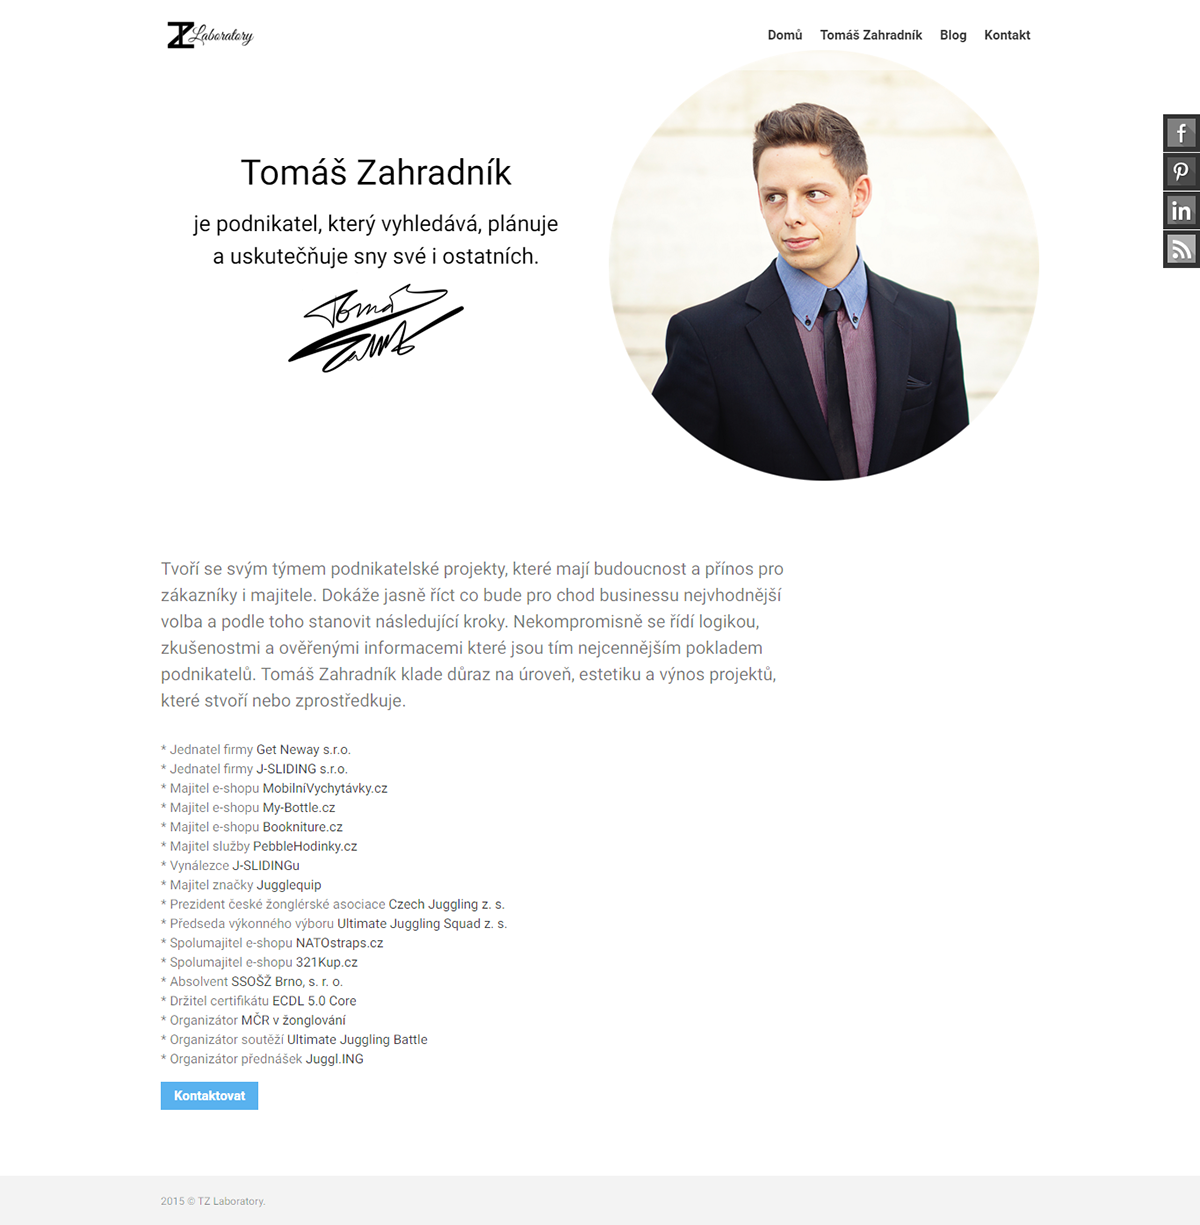 Tomáš Zahradník personal brand